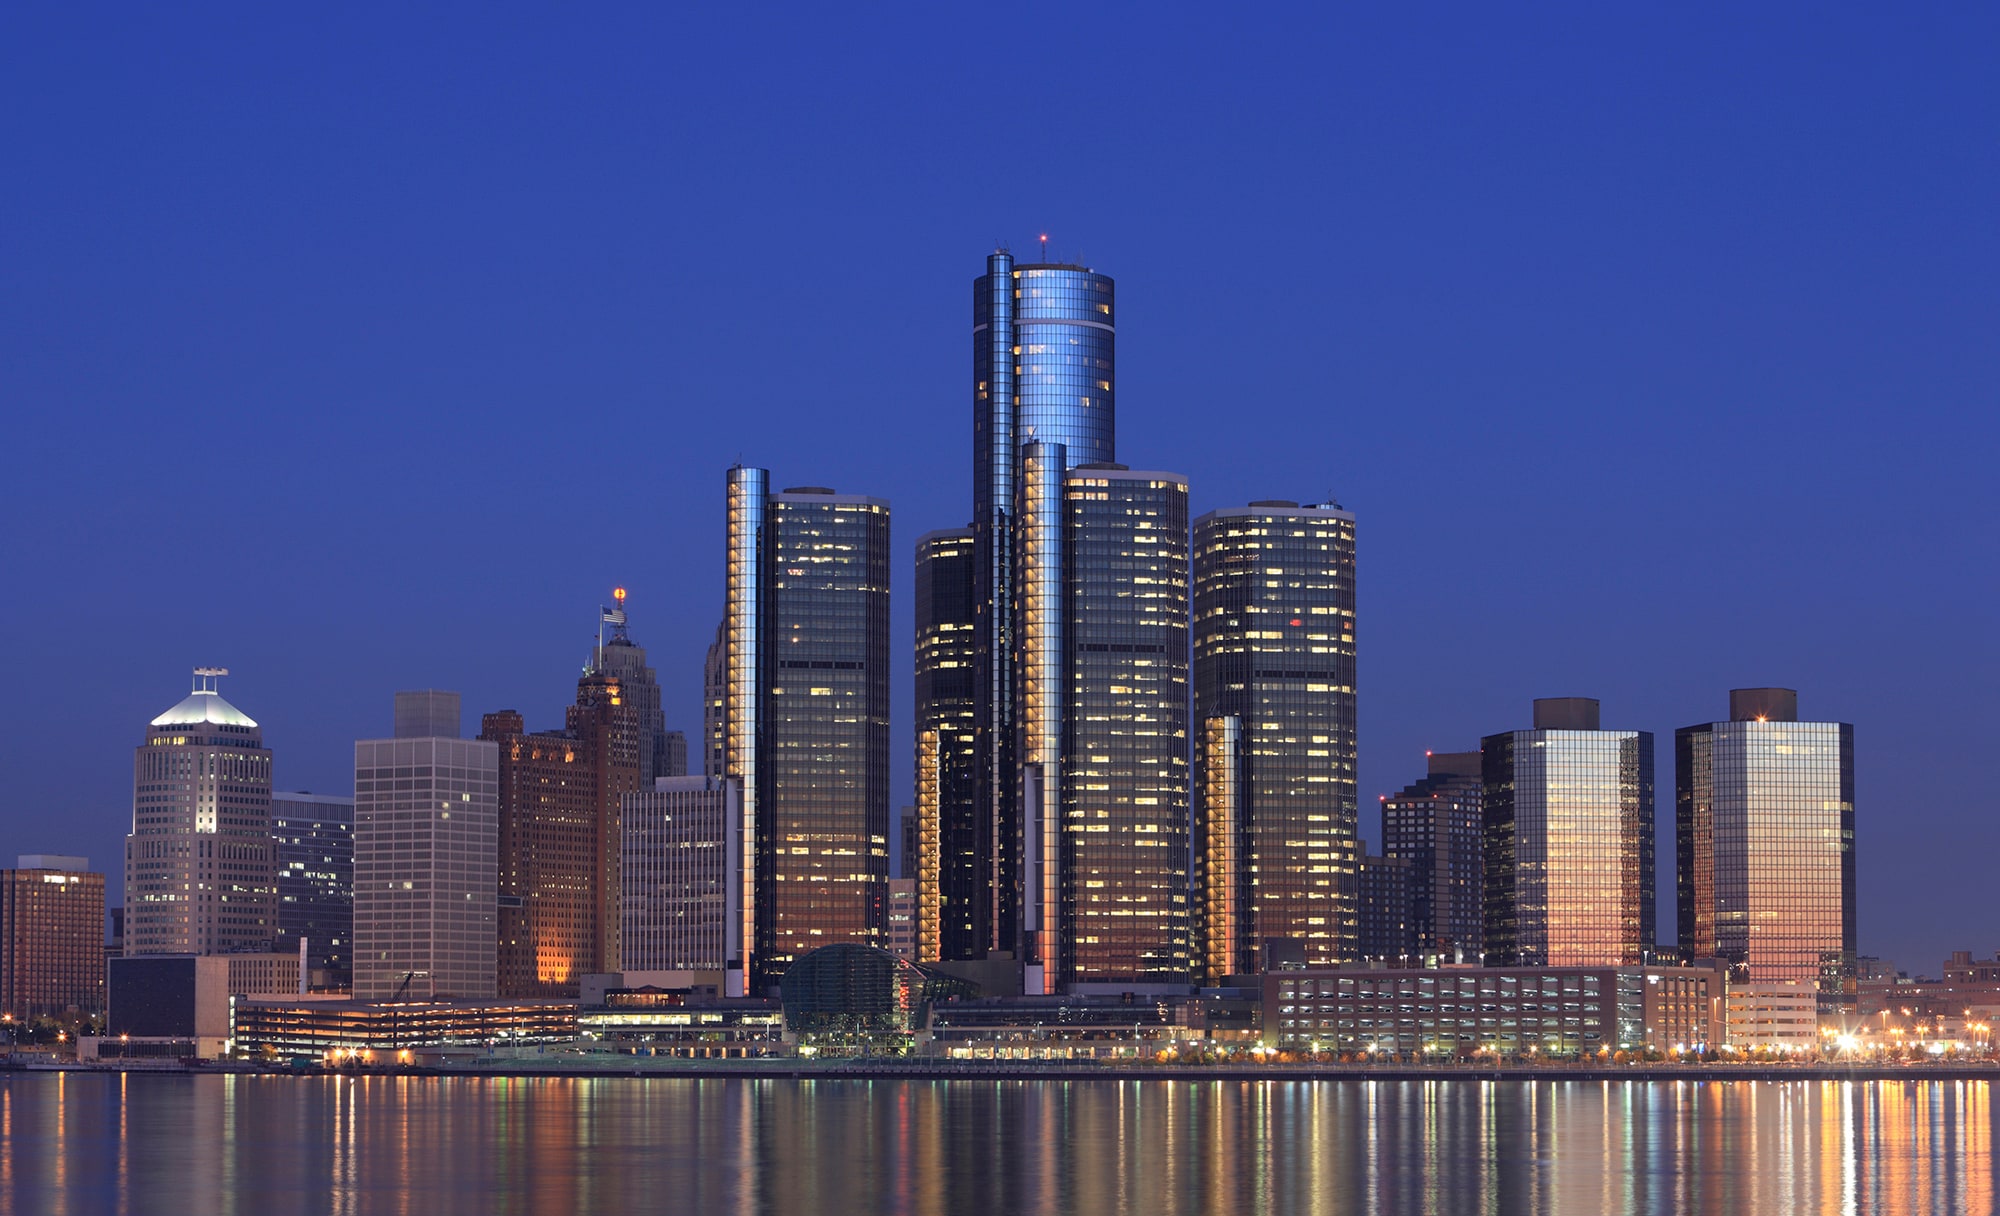 Detroit Michigan skyline